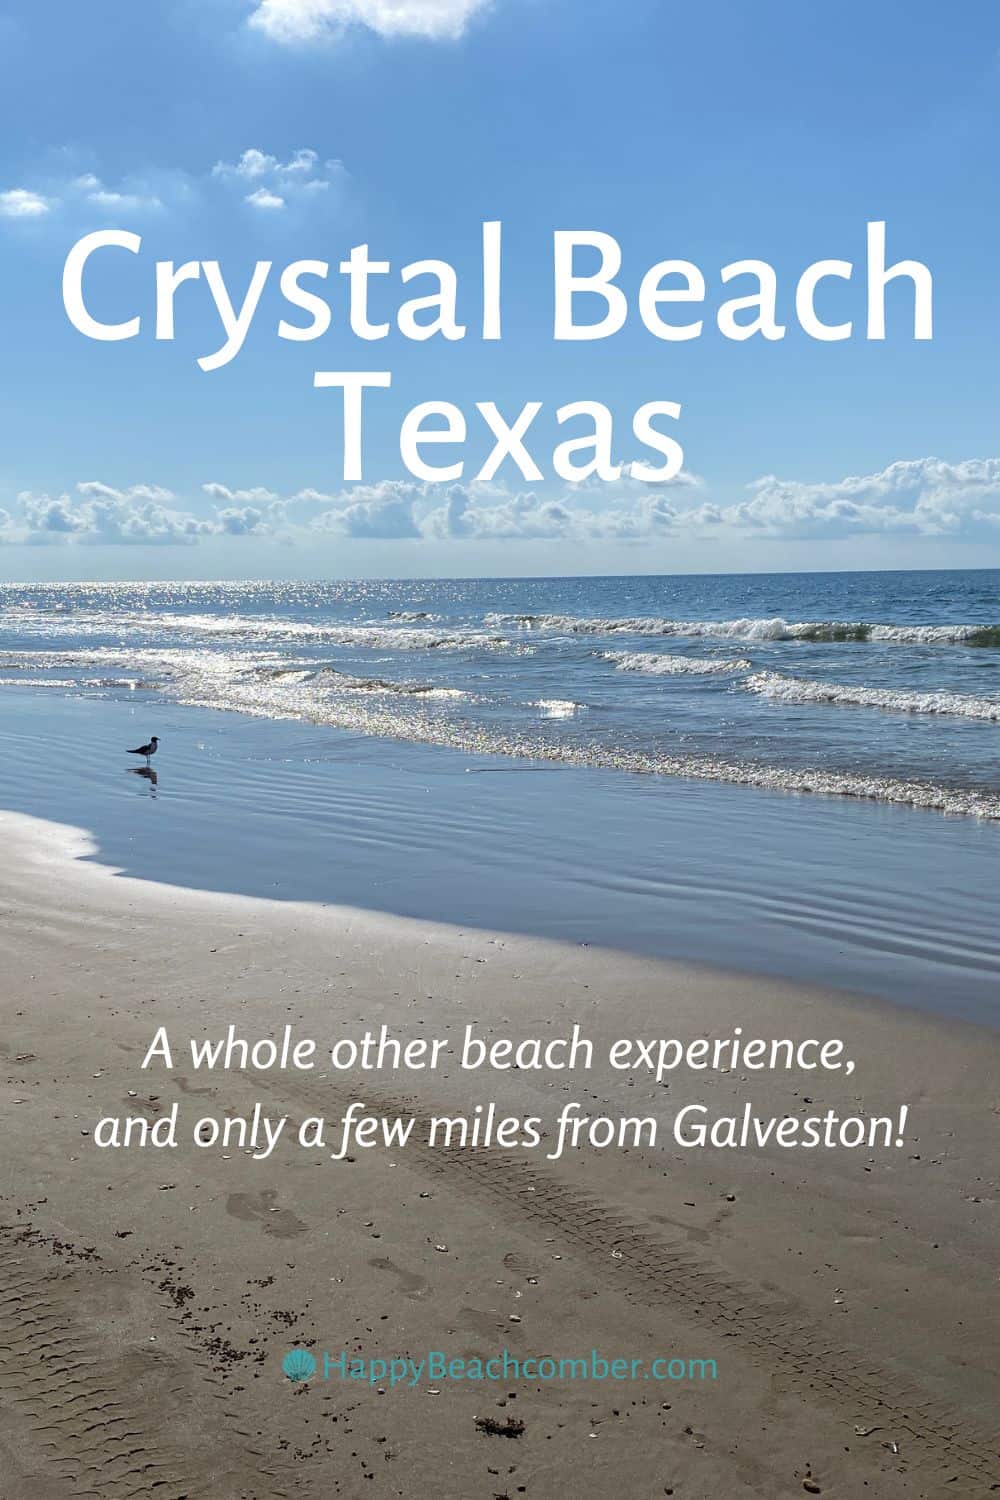 Crystal Beach Texas - A Whole Other Beach Experience